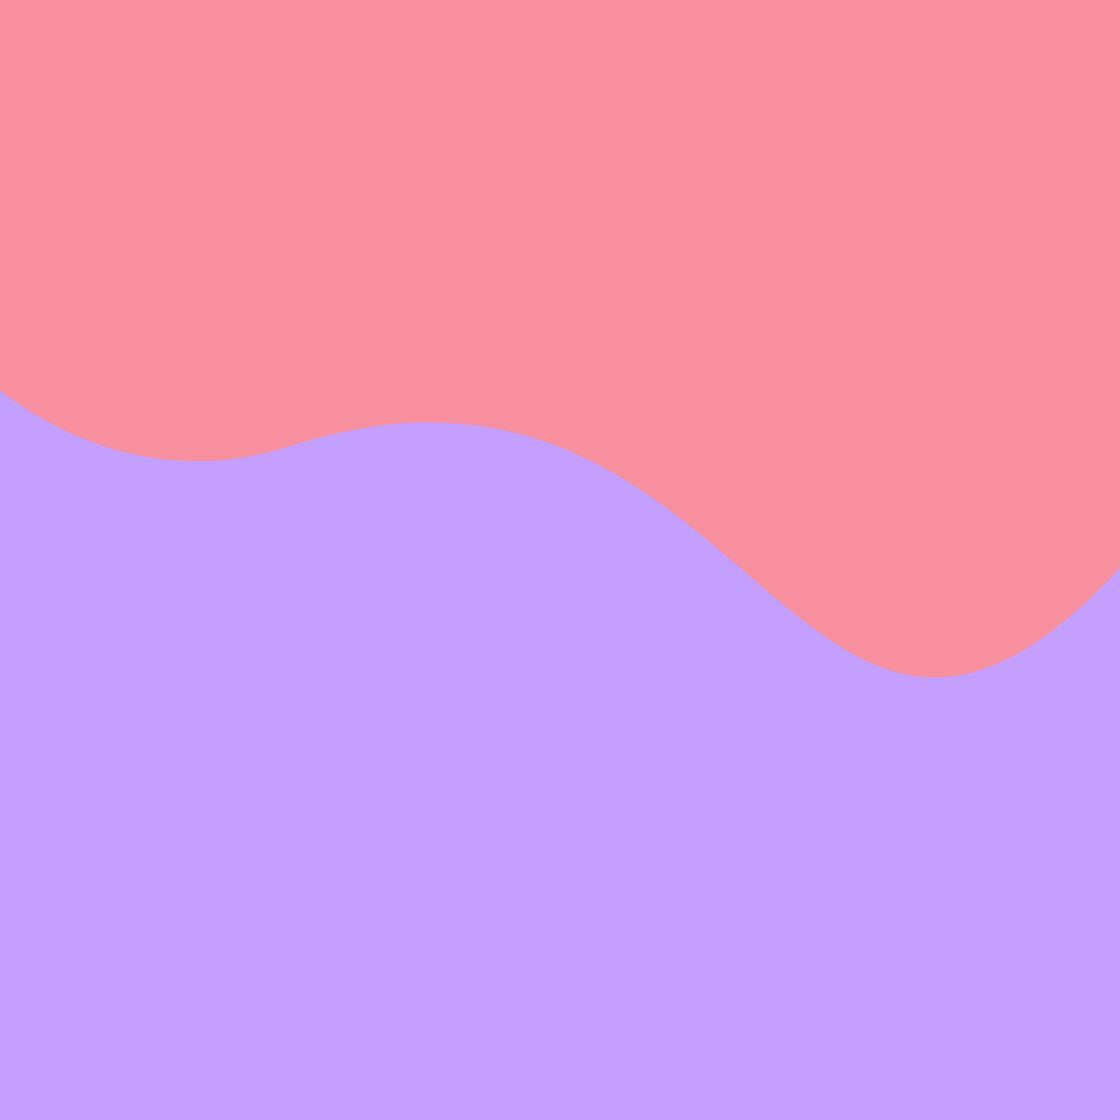 vague-violet-rose-gapianne-intimité-féminine-femmes-bien-être-ménopause-règles-maternité-périnée-règles douloureuses-saute d'humeur-lochies-bain-dérivatif-postpartum